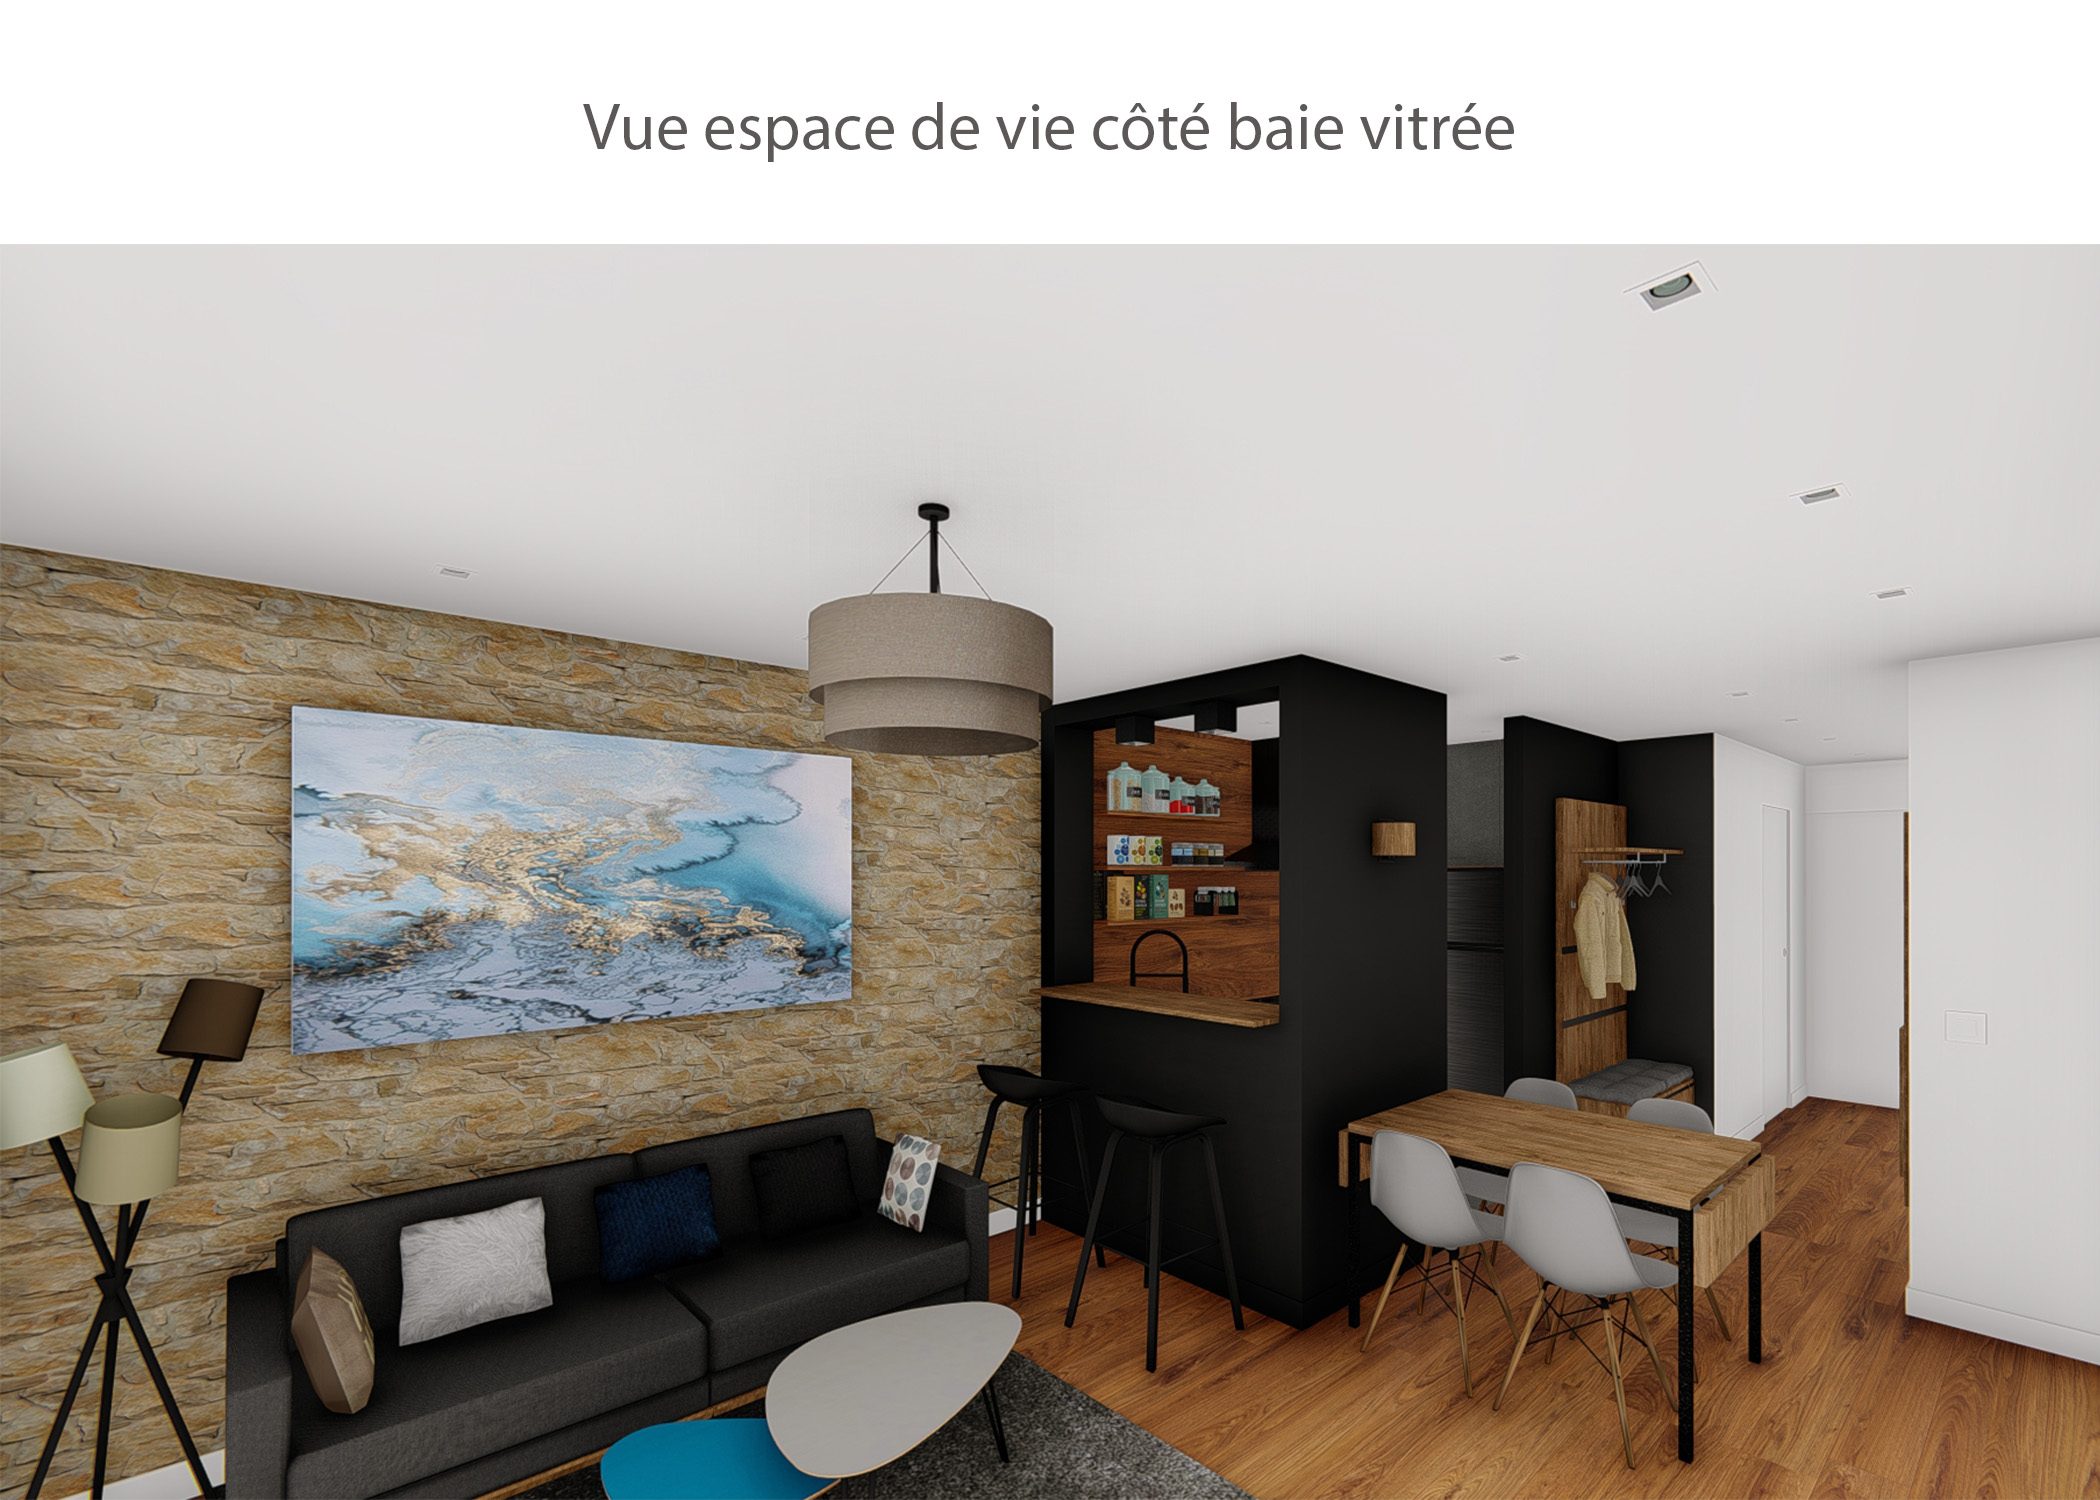 amenagement-decoration-appartement-montagne-italie-espace de vie cote baie vitree-dekho design